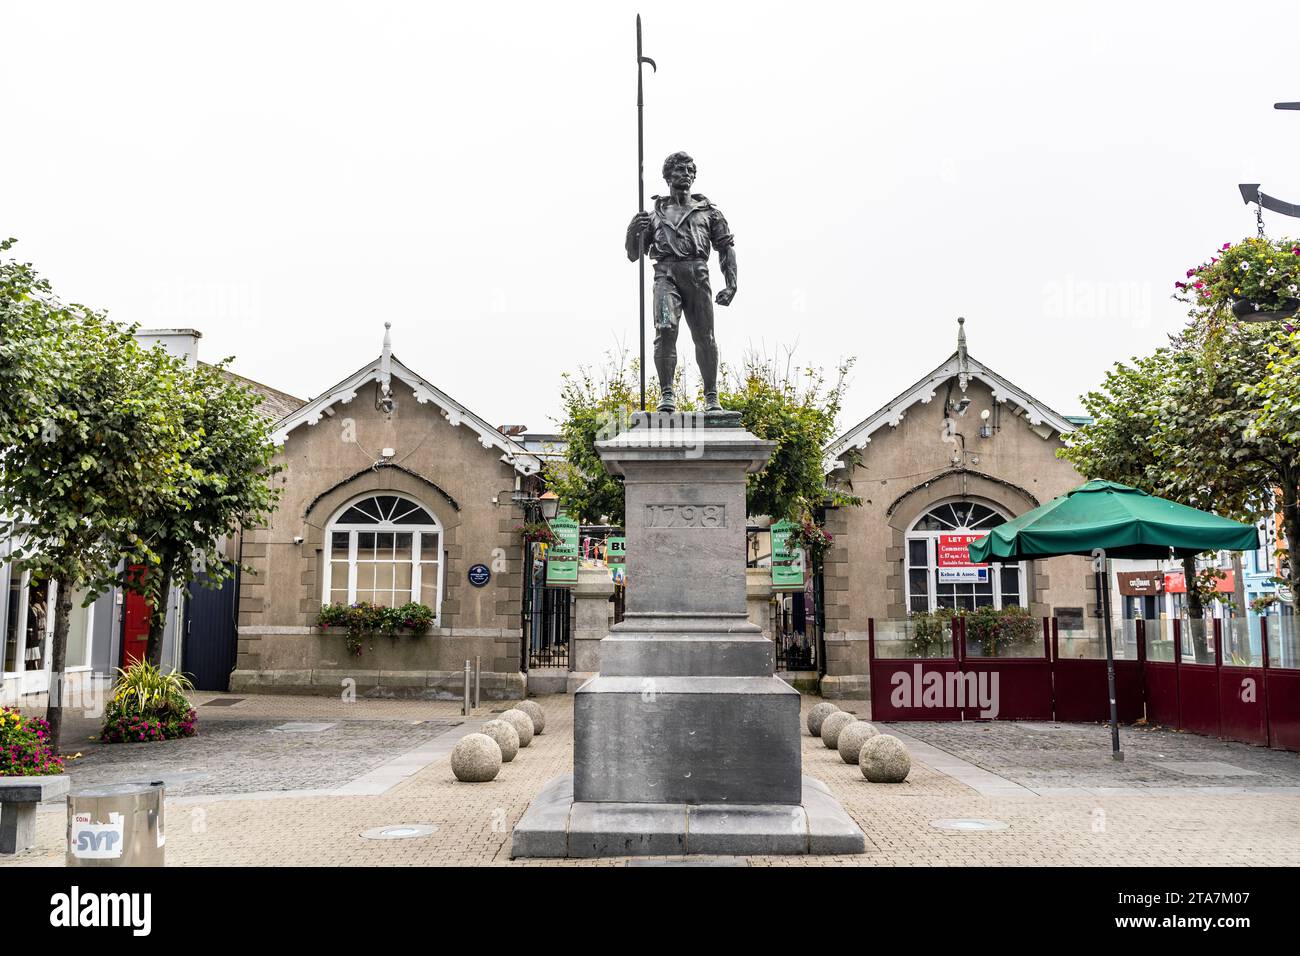 Le Pikeman, monument de 1798 s'élevant dans les arènes, centre-ville de Wexford, Irlande Banque D'Images